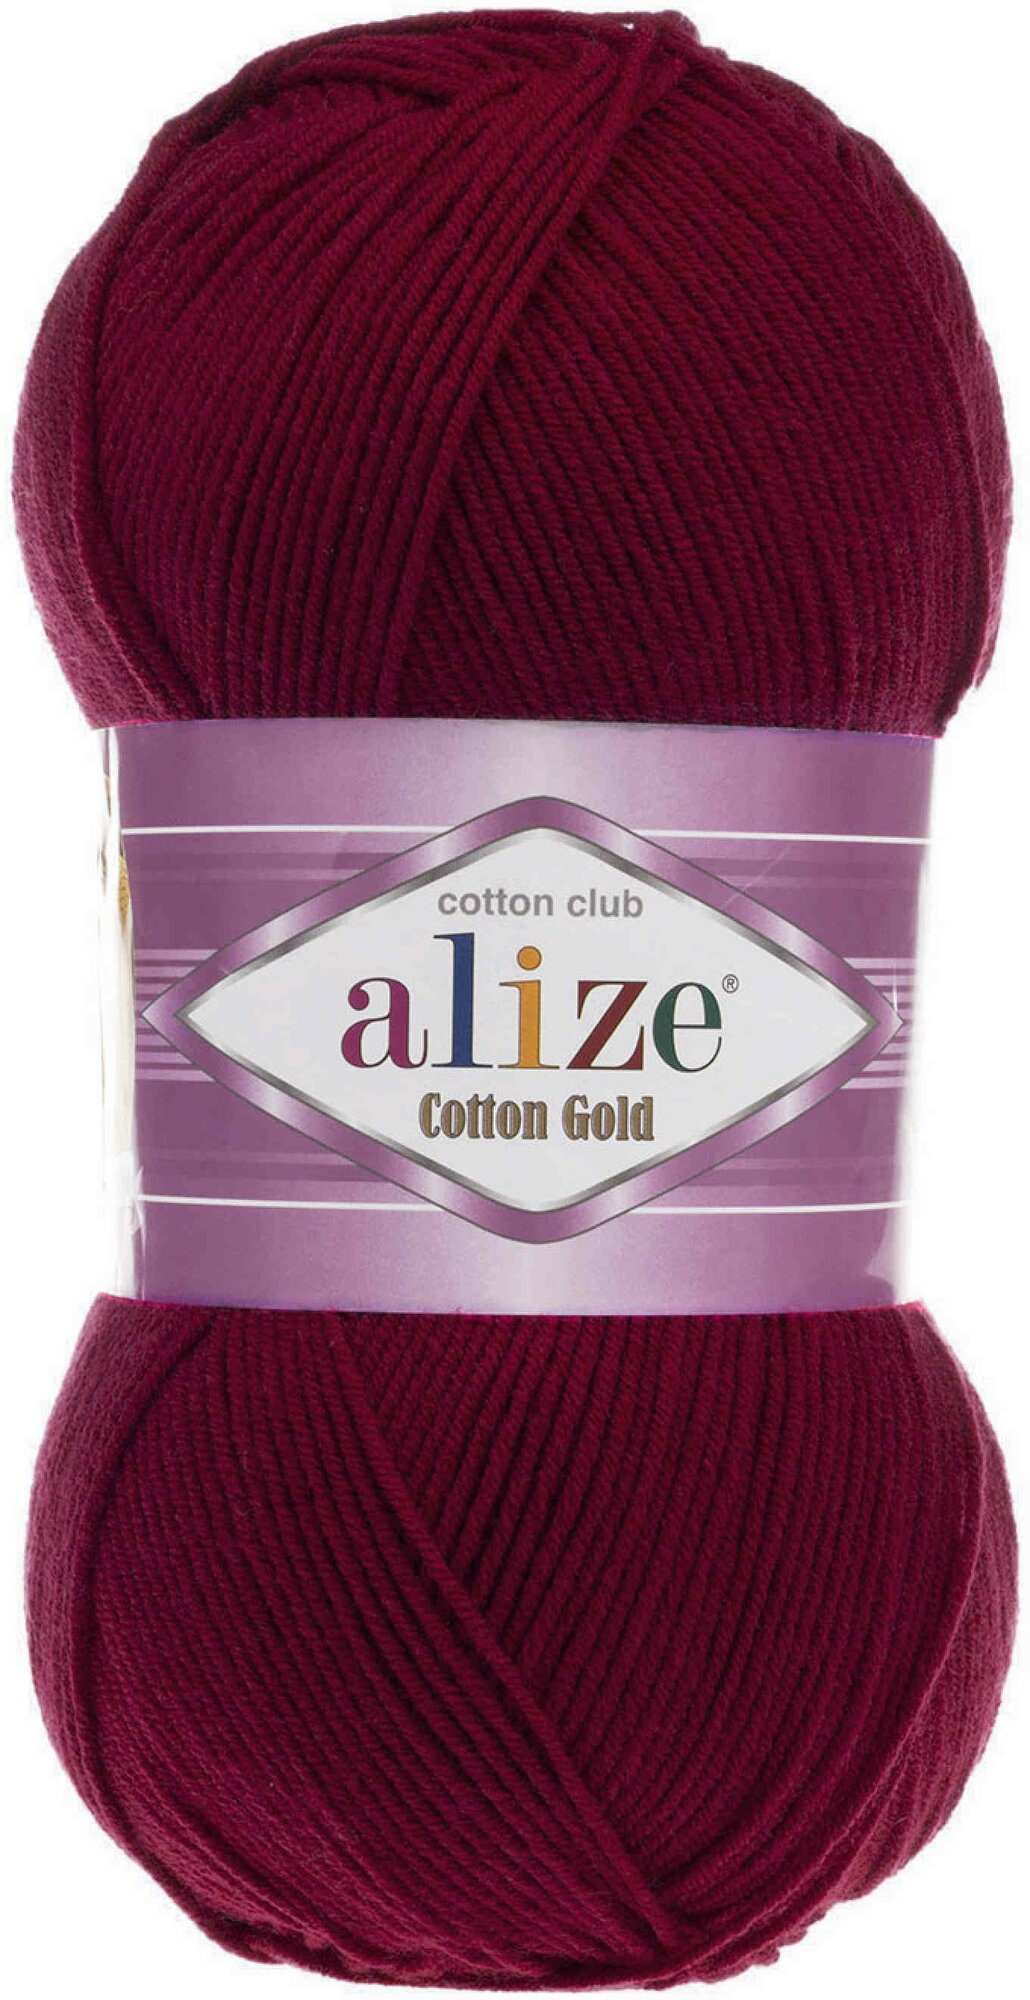 Пряжа Alize Cotton Gold бордовый (57), 55%хлопок/45%акрил, 330м, 100г, 1шт